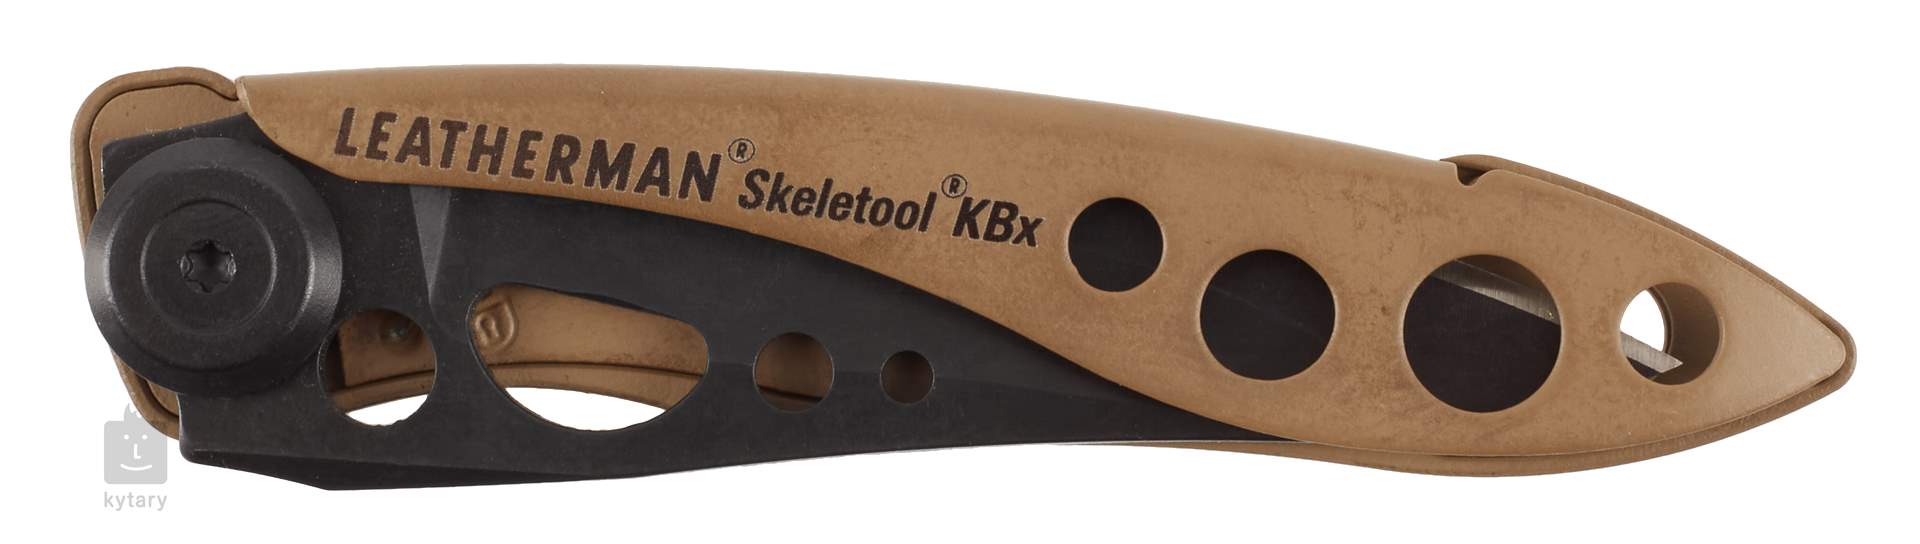 Navaja Leatherman Skeletool KBX – navajas multiusos